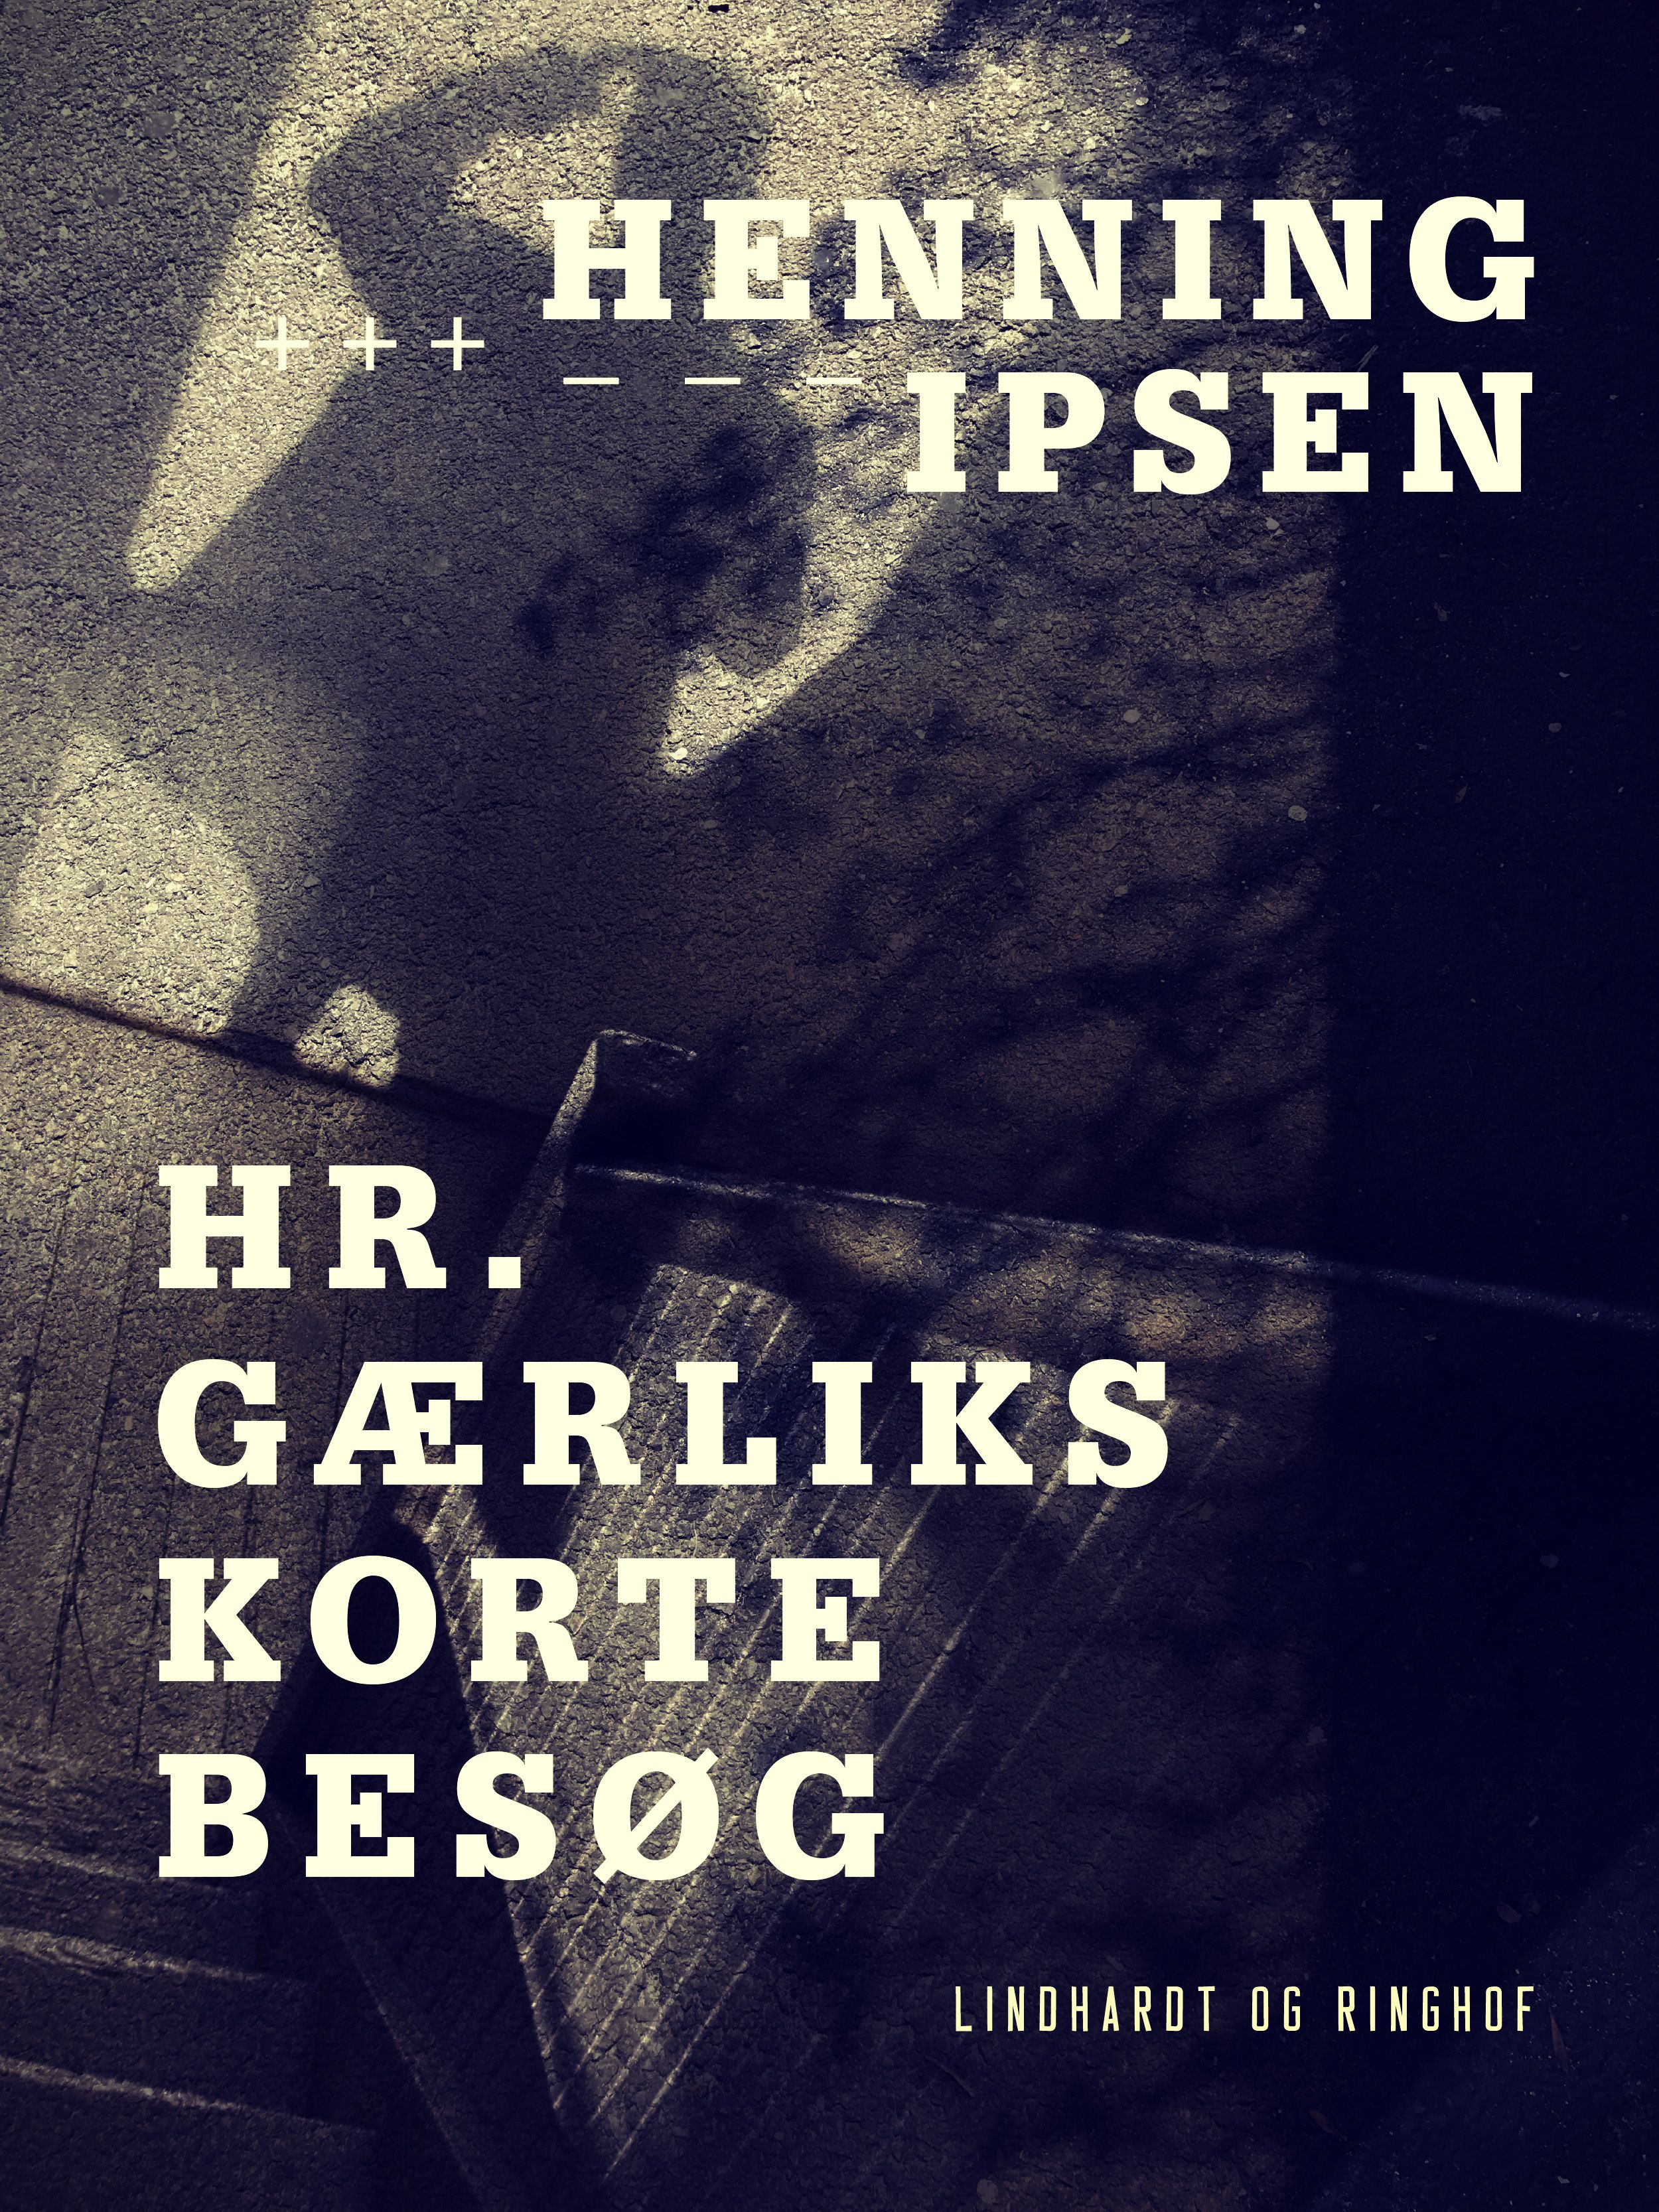 Hr. Gærliks korte besøg, eBook by Henning Ipsen